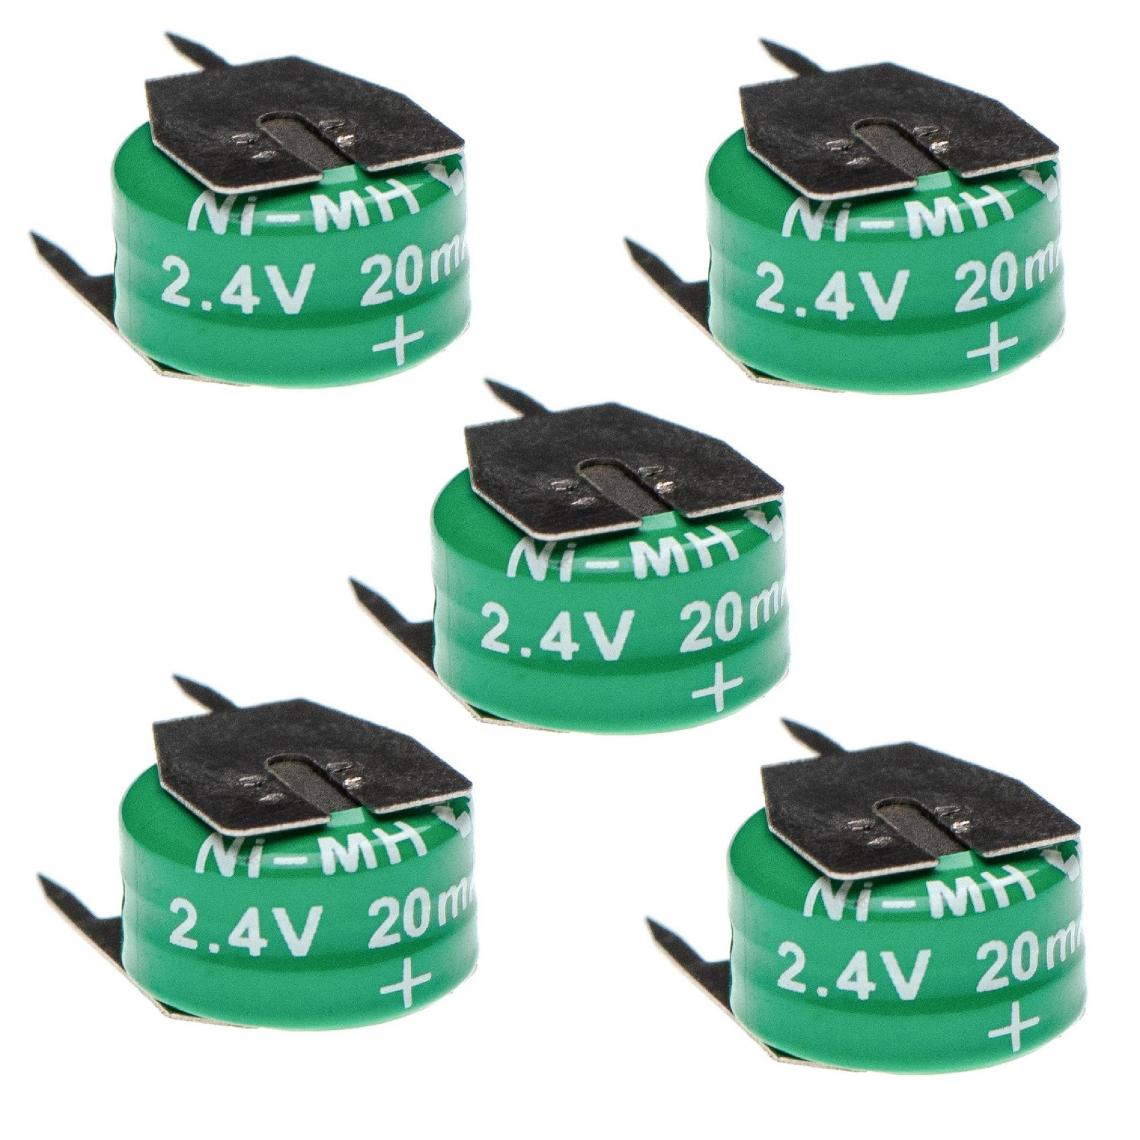 Vhbw - vhbw 5x Batteries remplacement pour 2/V15H pour modéle RC (20mAh, 2,4V, NiMH), avec connexion à 3 broches - Autre appareil de mesure